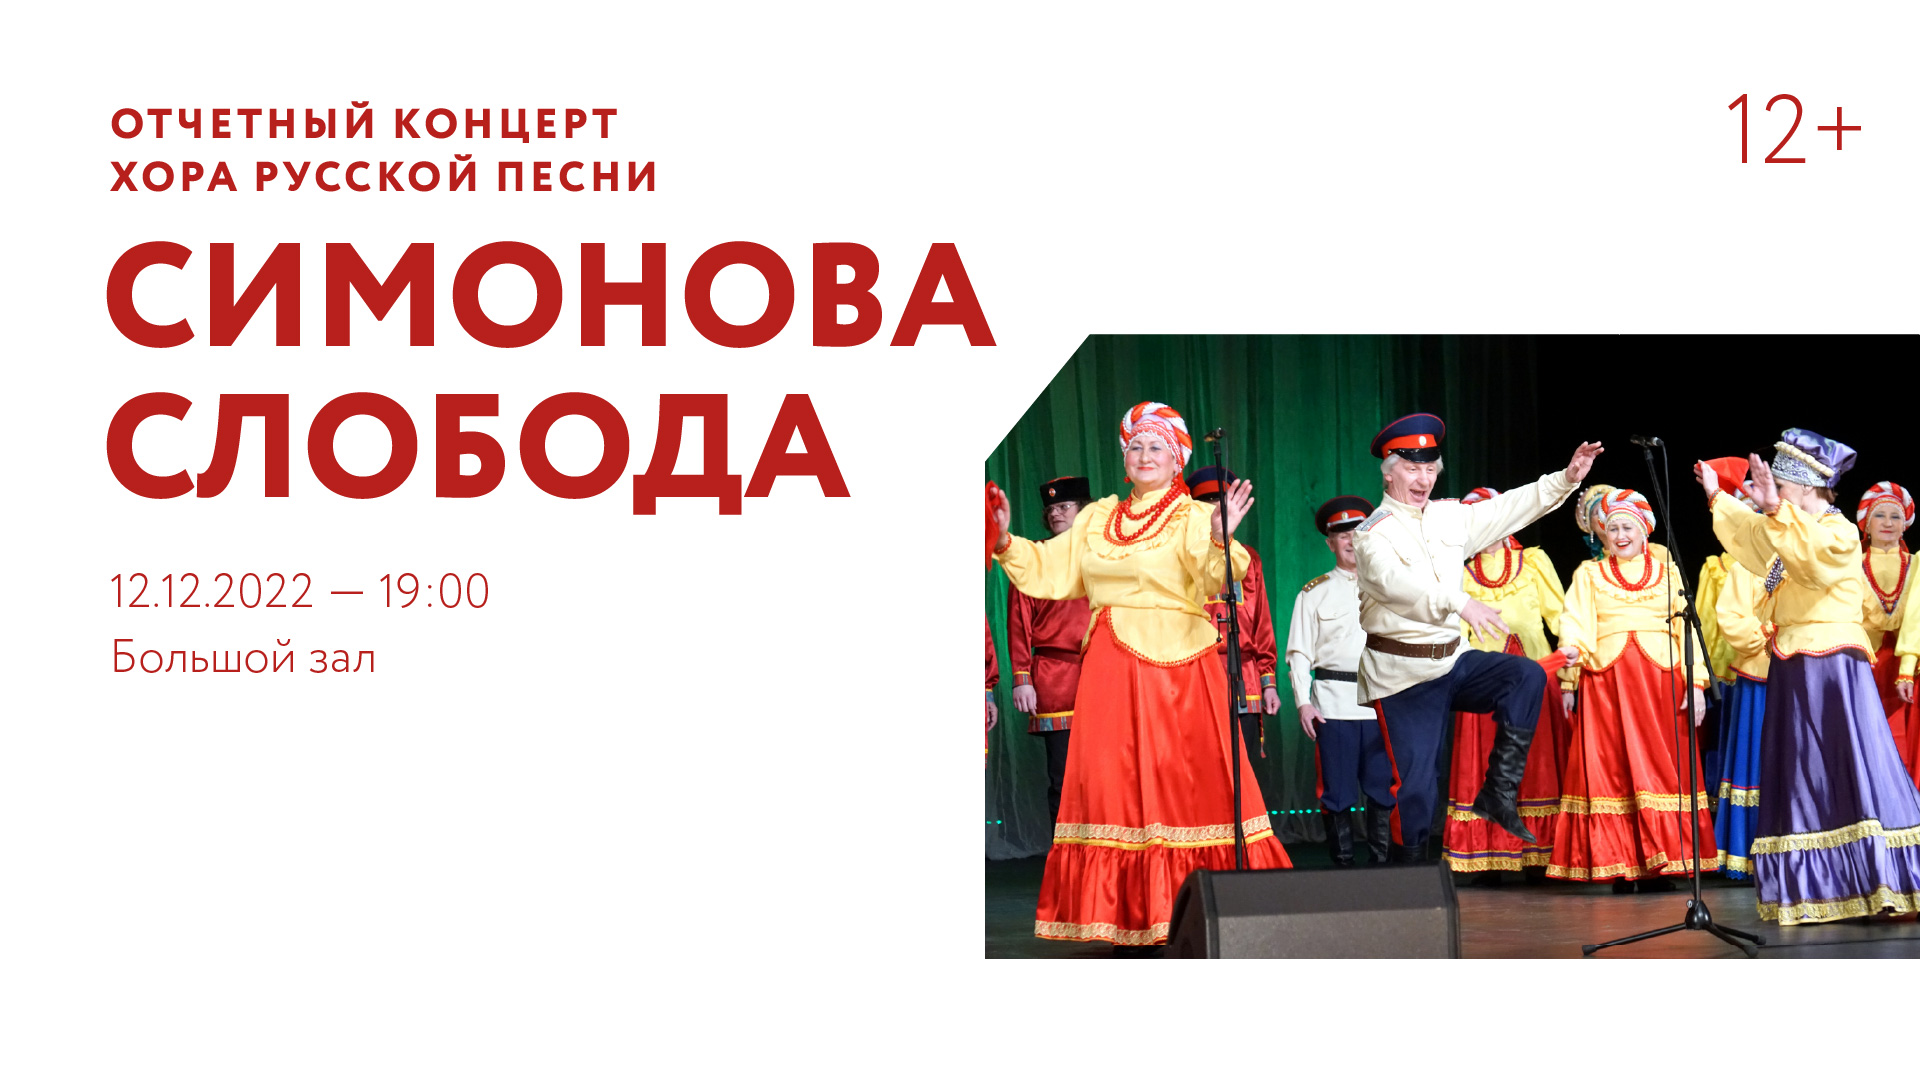 Отчетный концерт хора русской песни «Симонова слобода»